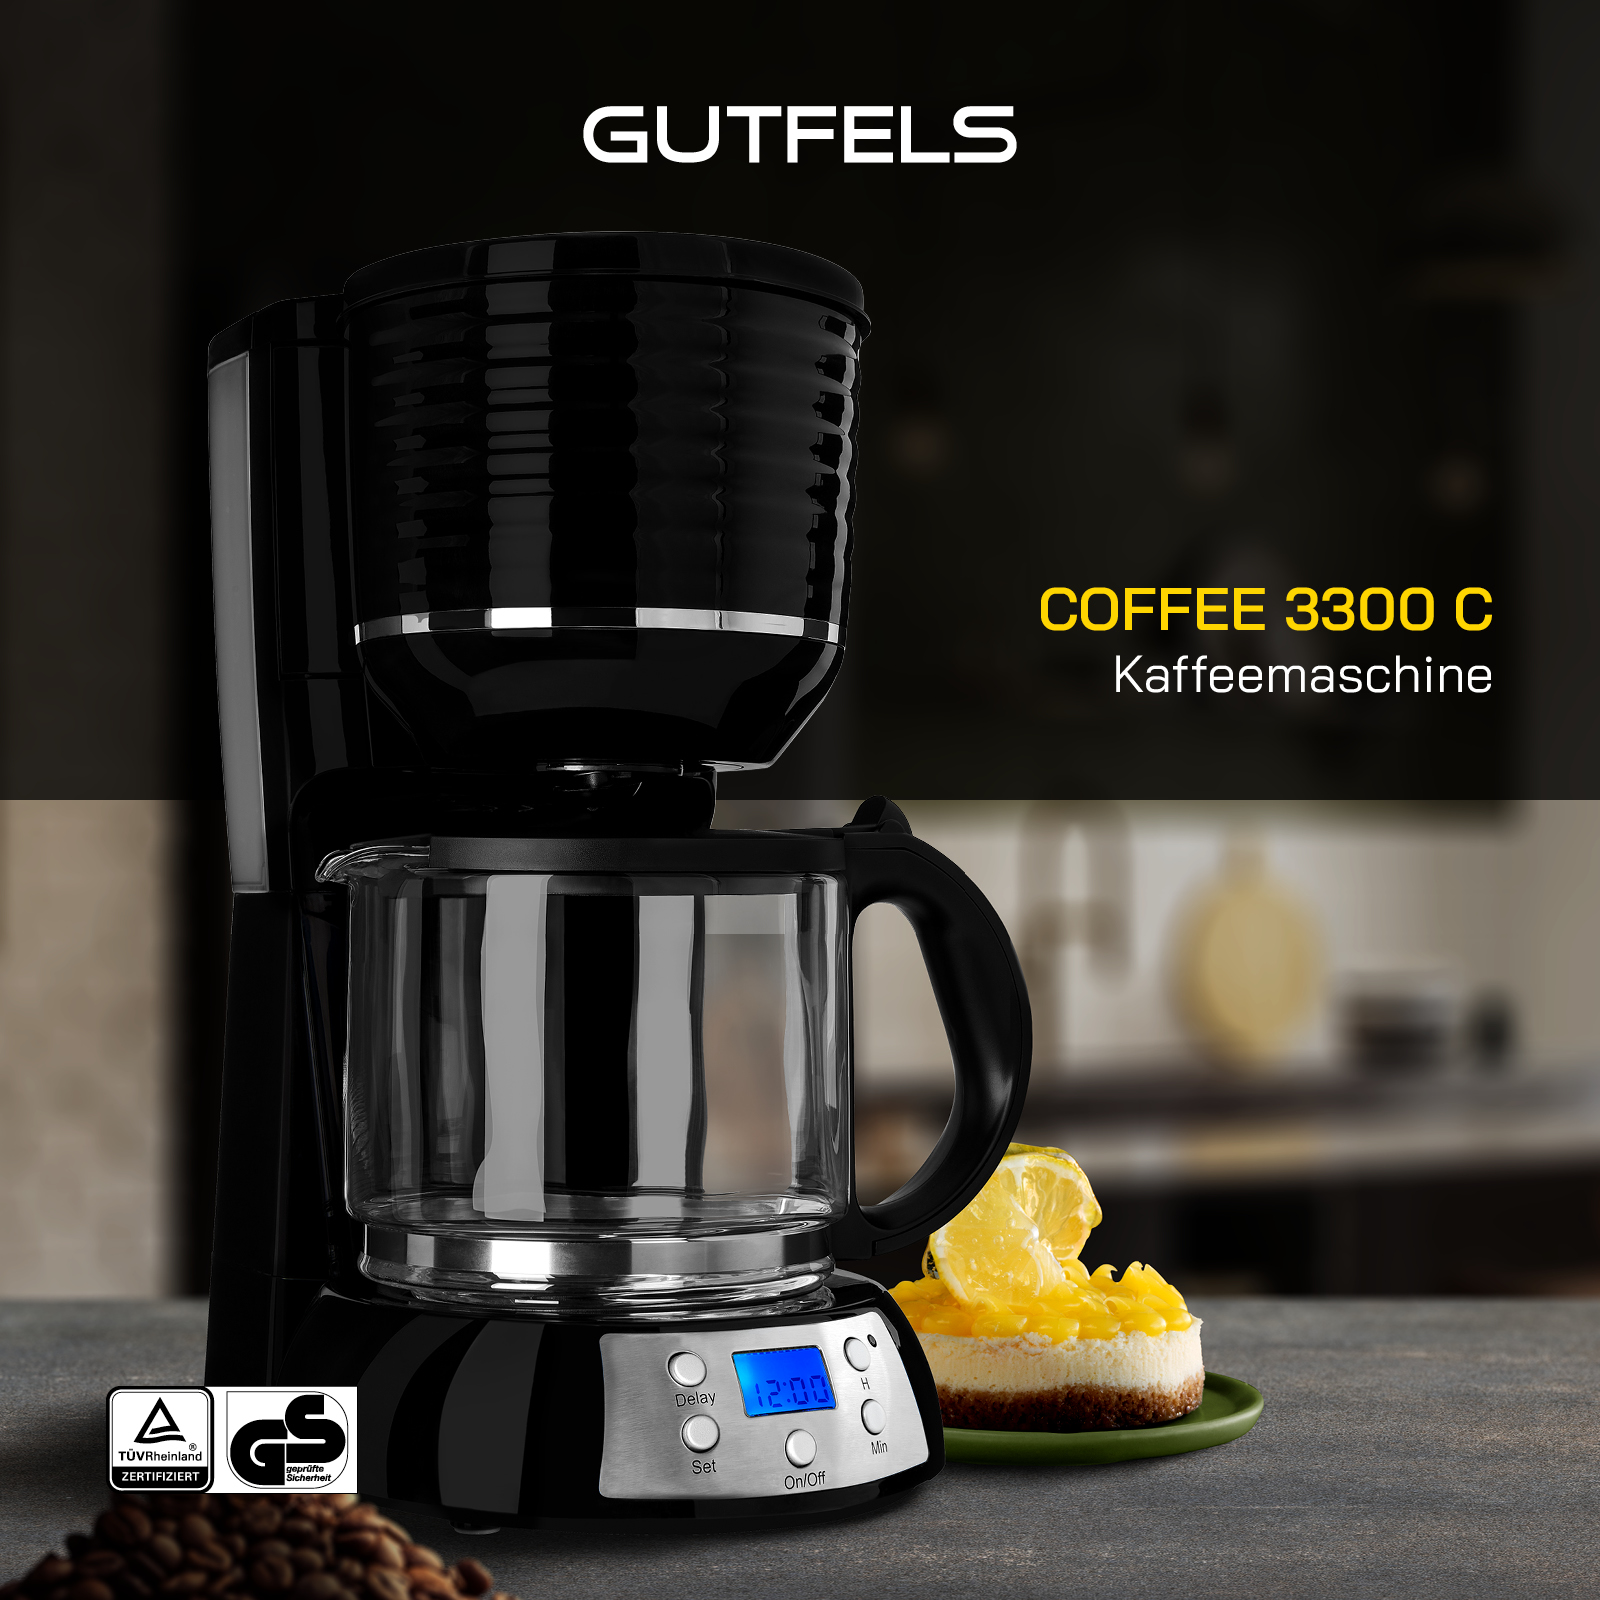 GUTFELS Kaffeemaschine C COFFEE 3300 schwarz